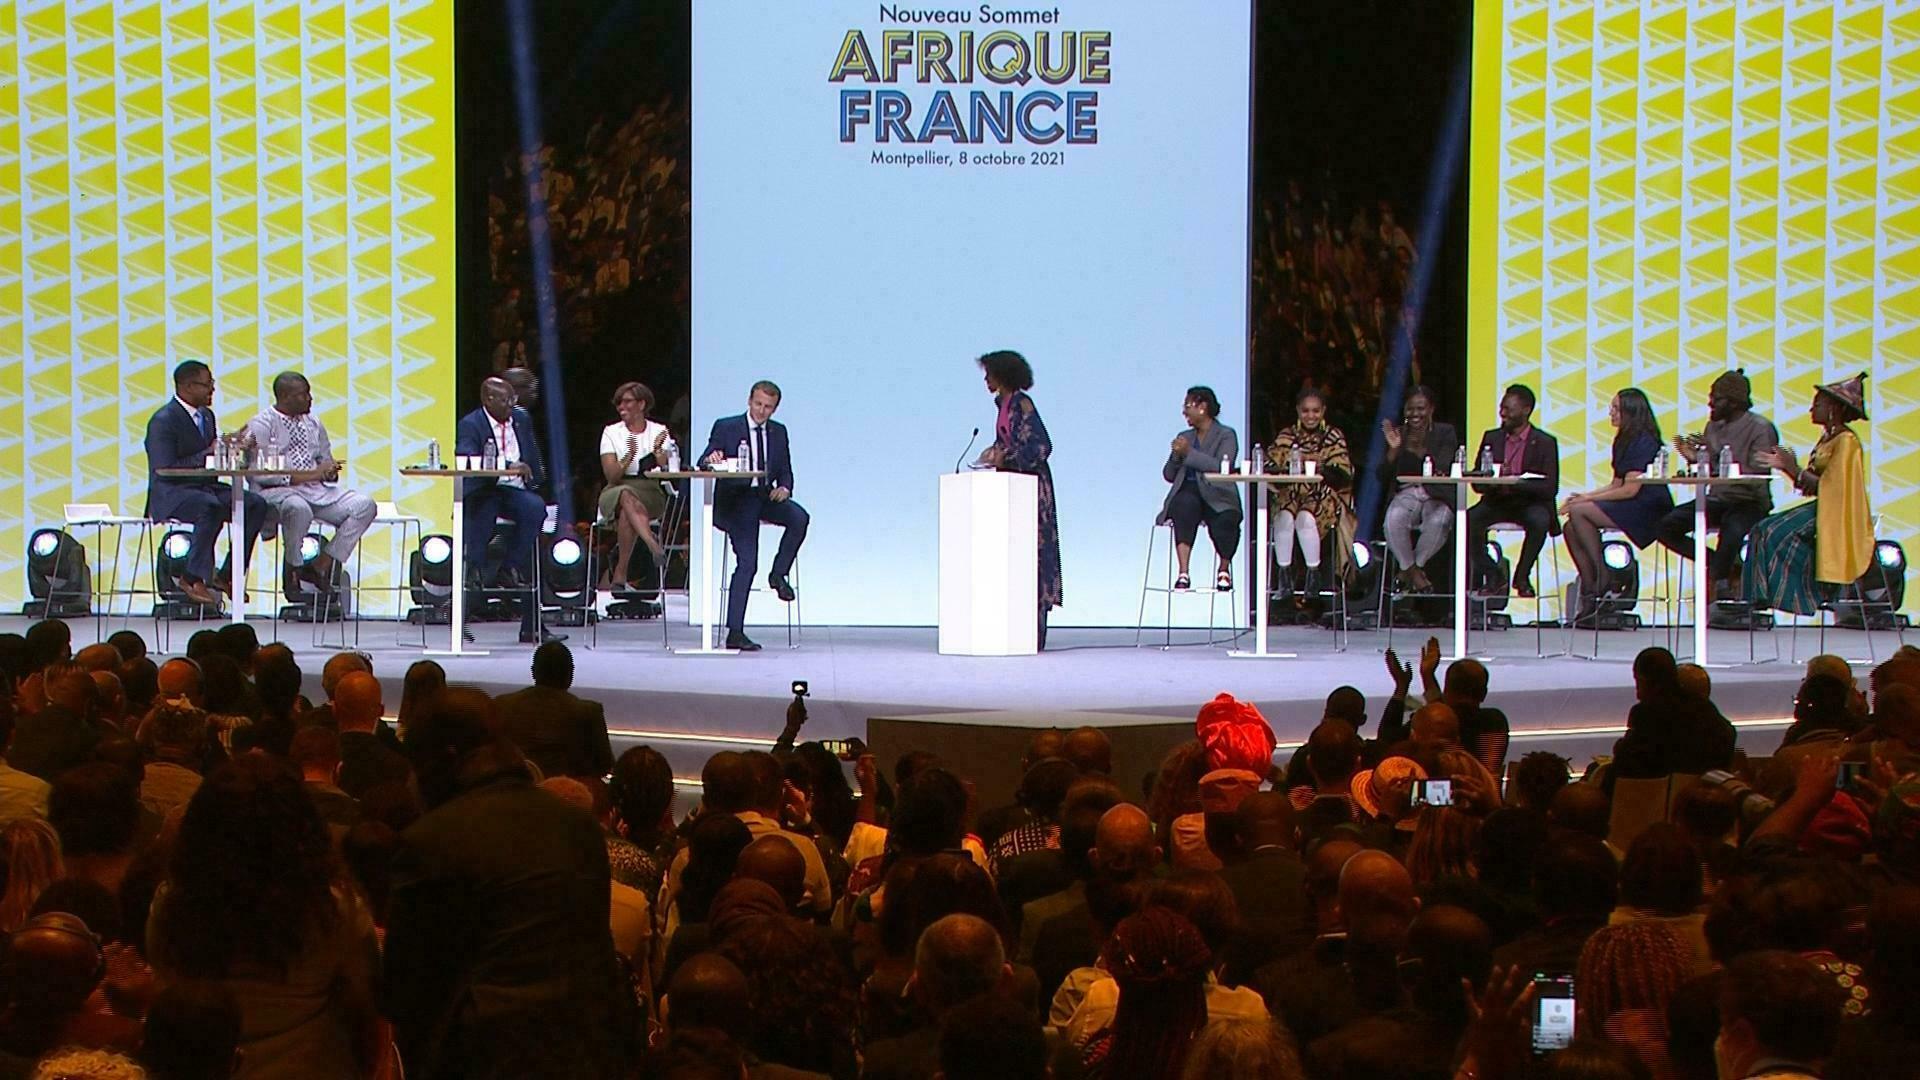 [Sommet Afrique France] ‘’La France maîtrise bien l’art de la manipulation et de la diversion’’ (contribution)